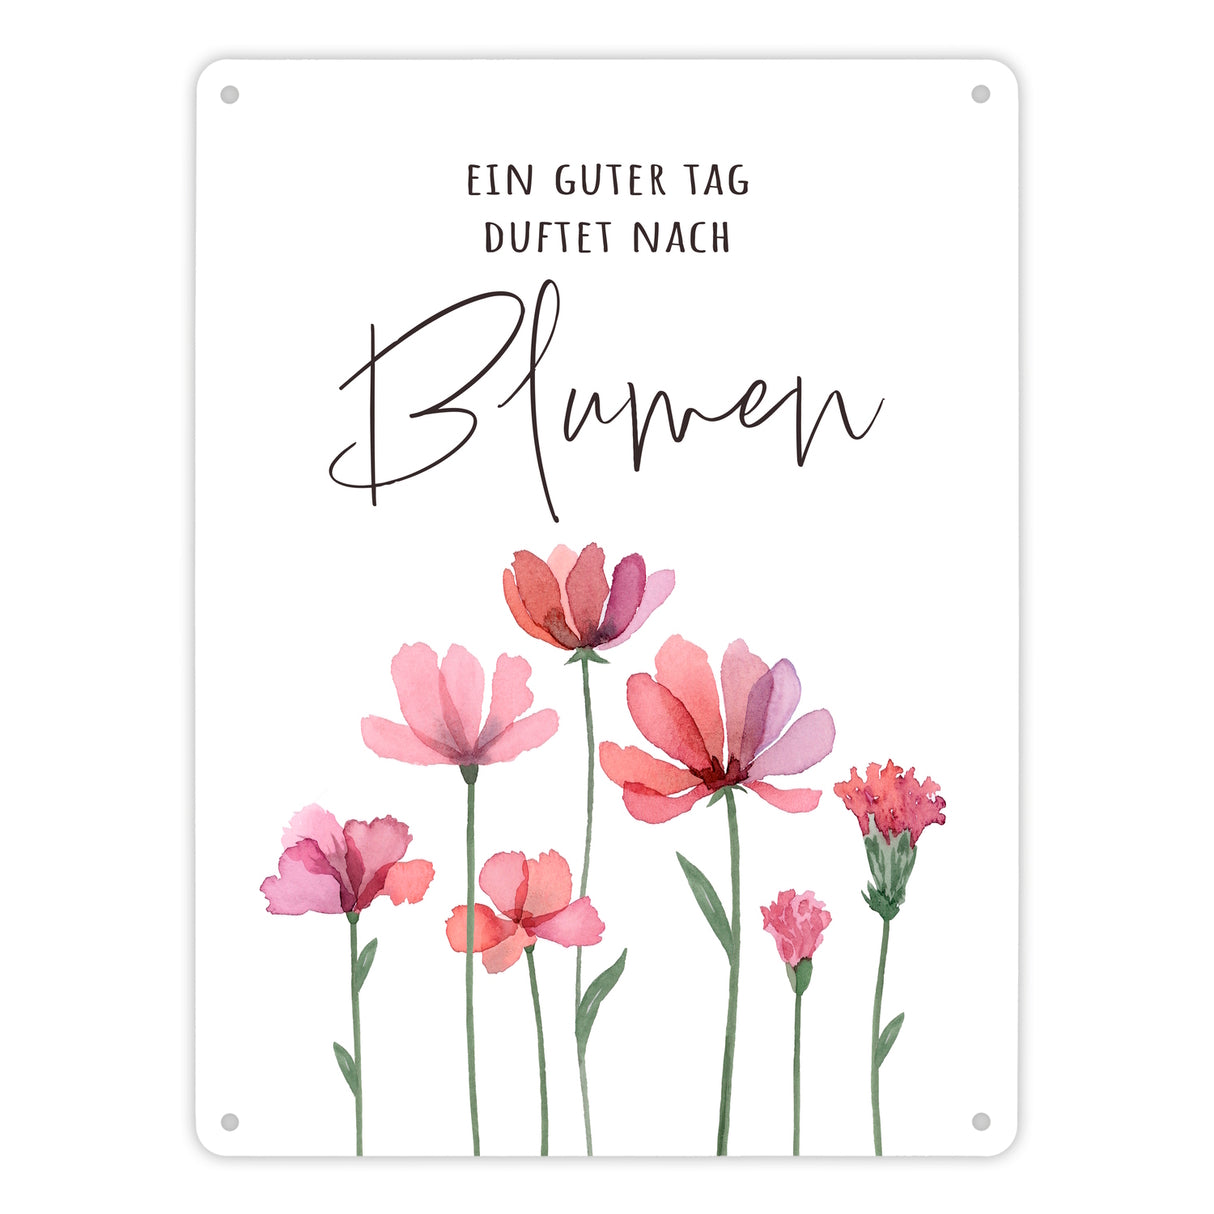 Aquarell Blumen Metallschild in 15x20 cm mit Spruch Ein guter Tag duftet nach Blumen